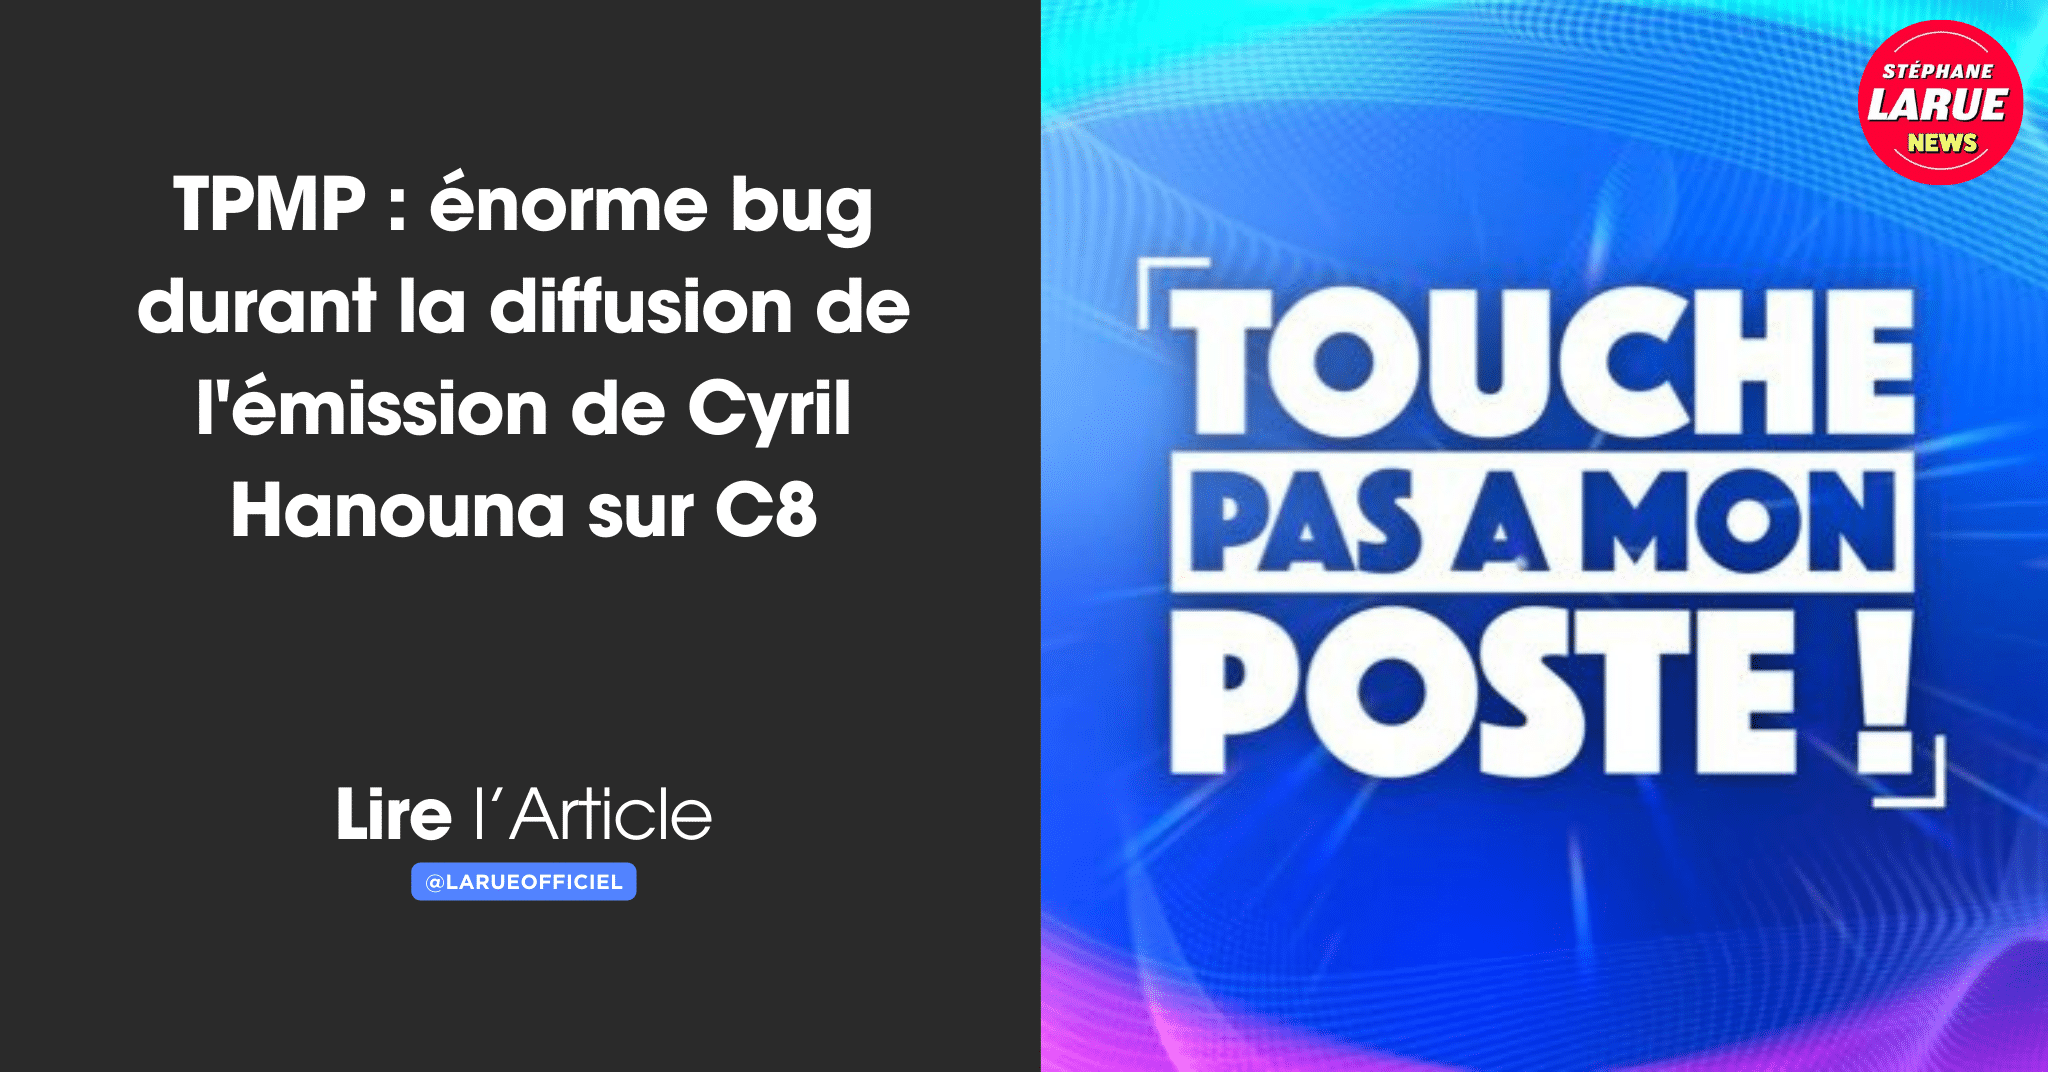 TPMP : cet énorme bug durant la diffusion de l'émission de Cyril Hanouna sur C8